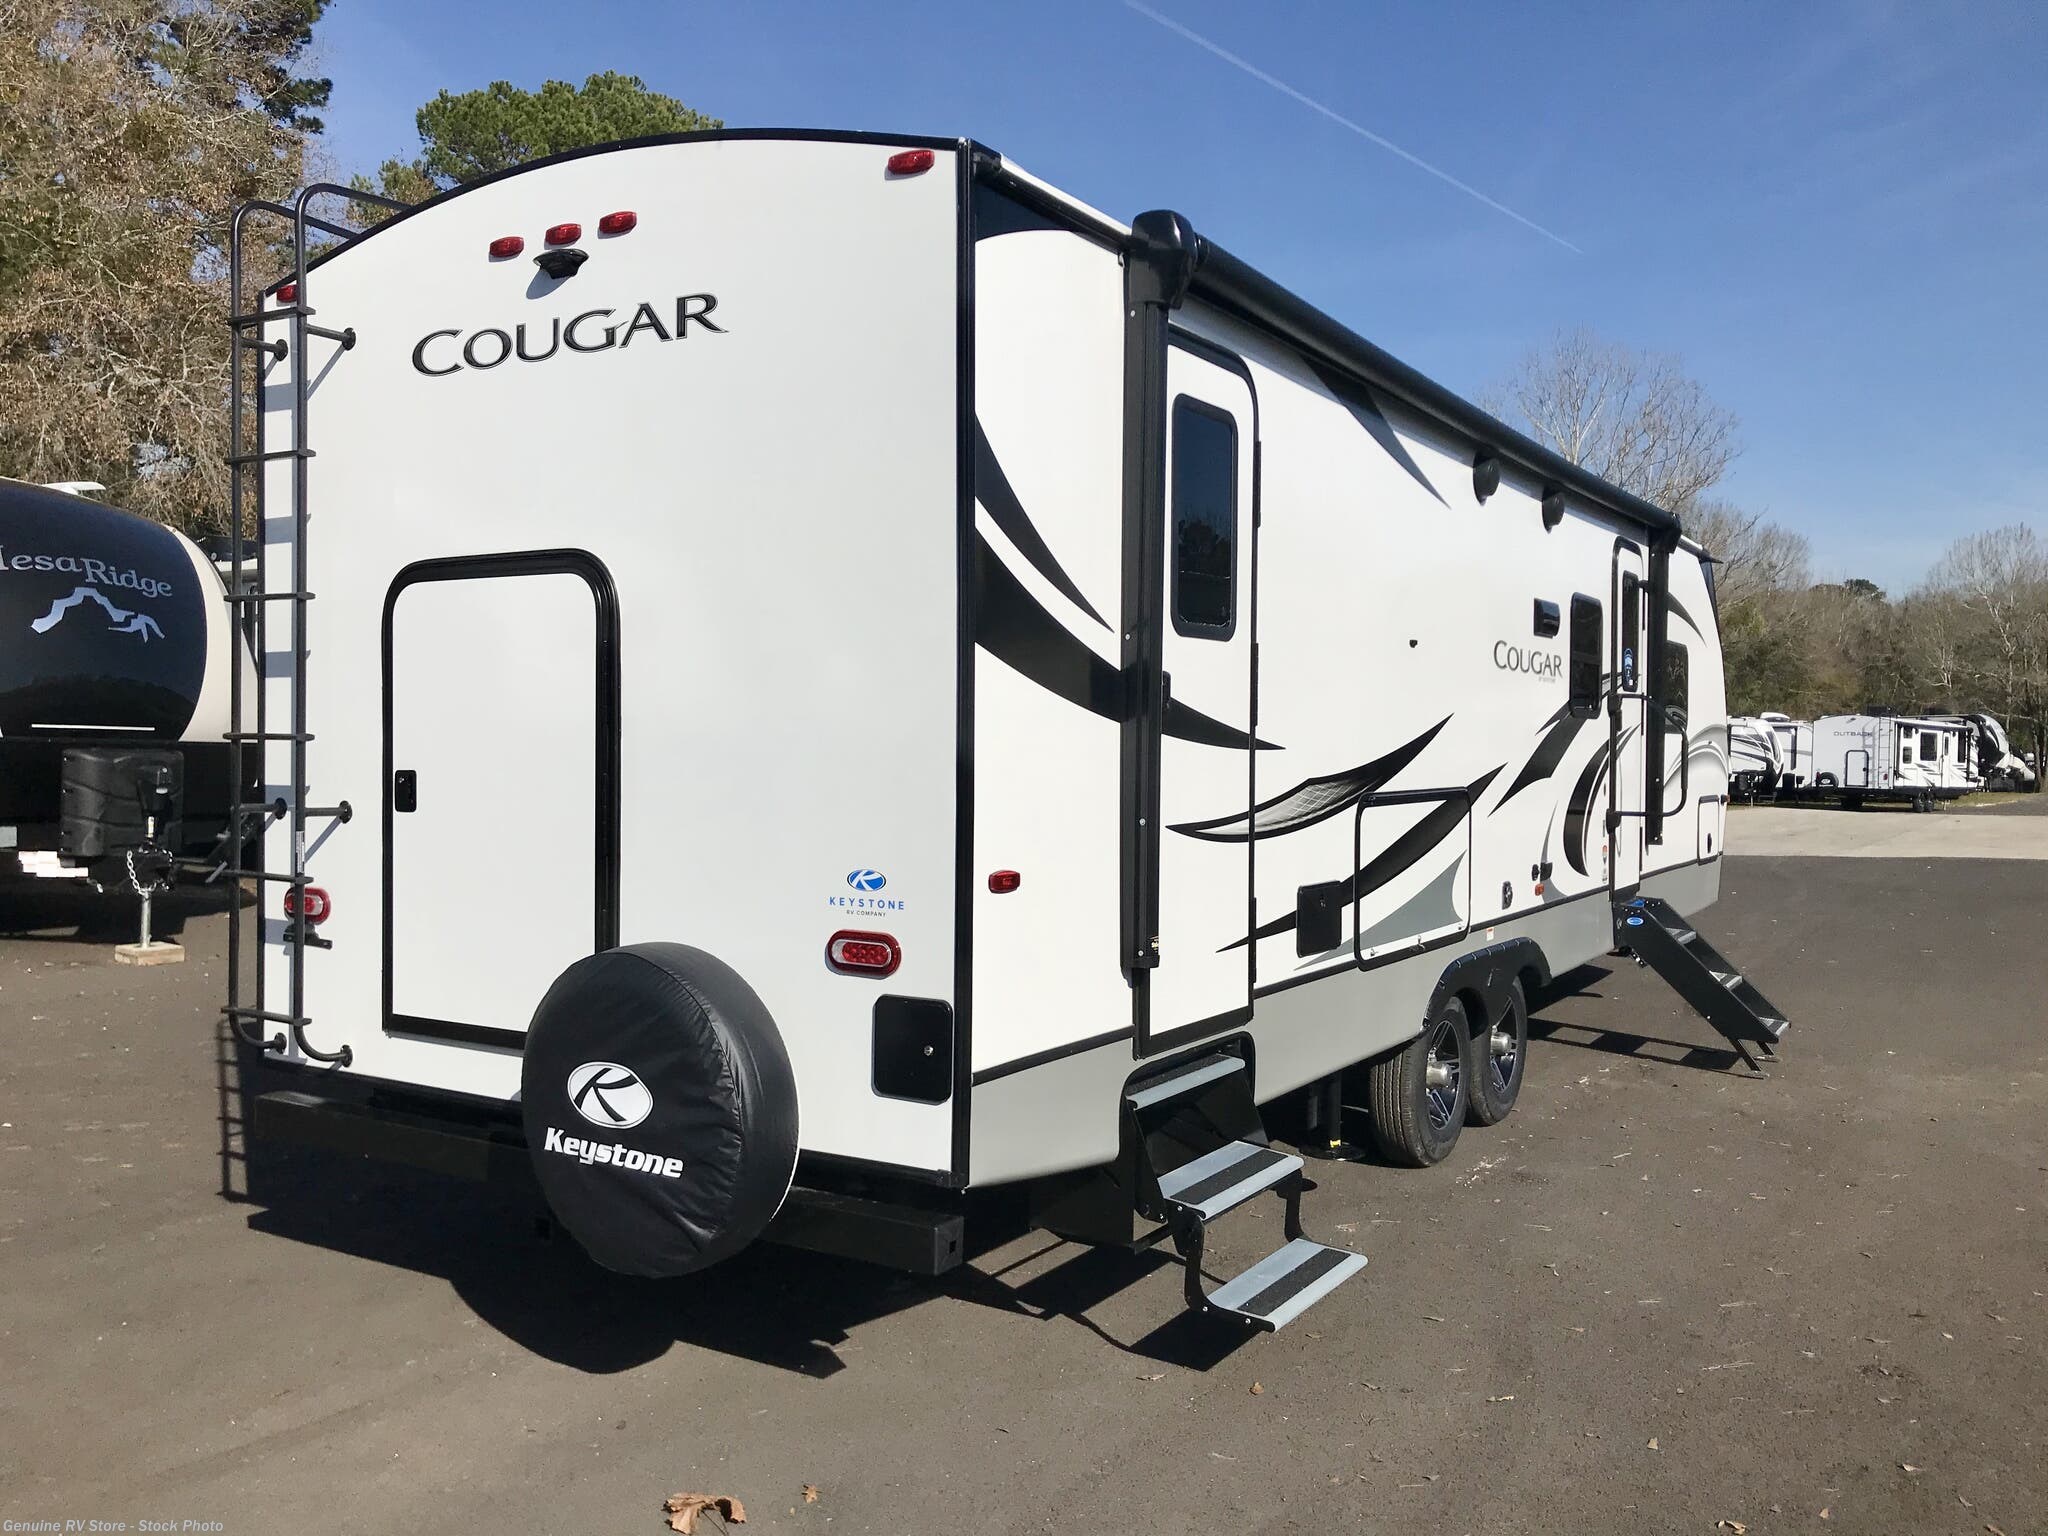 keystone cougar travel trailer 2021